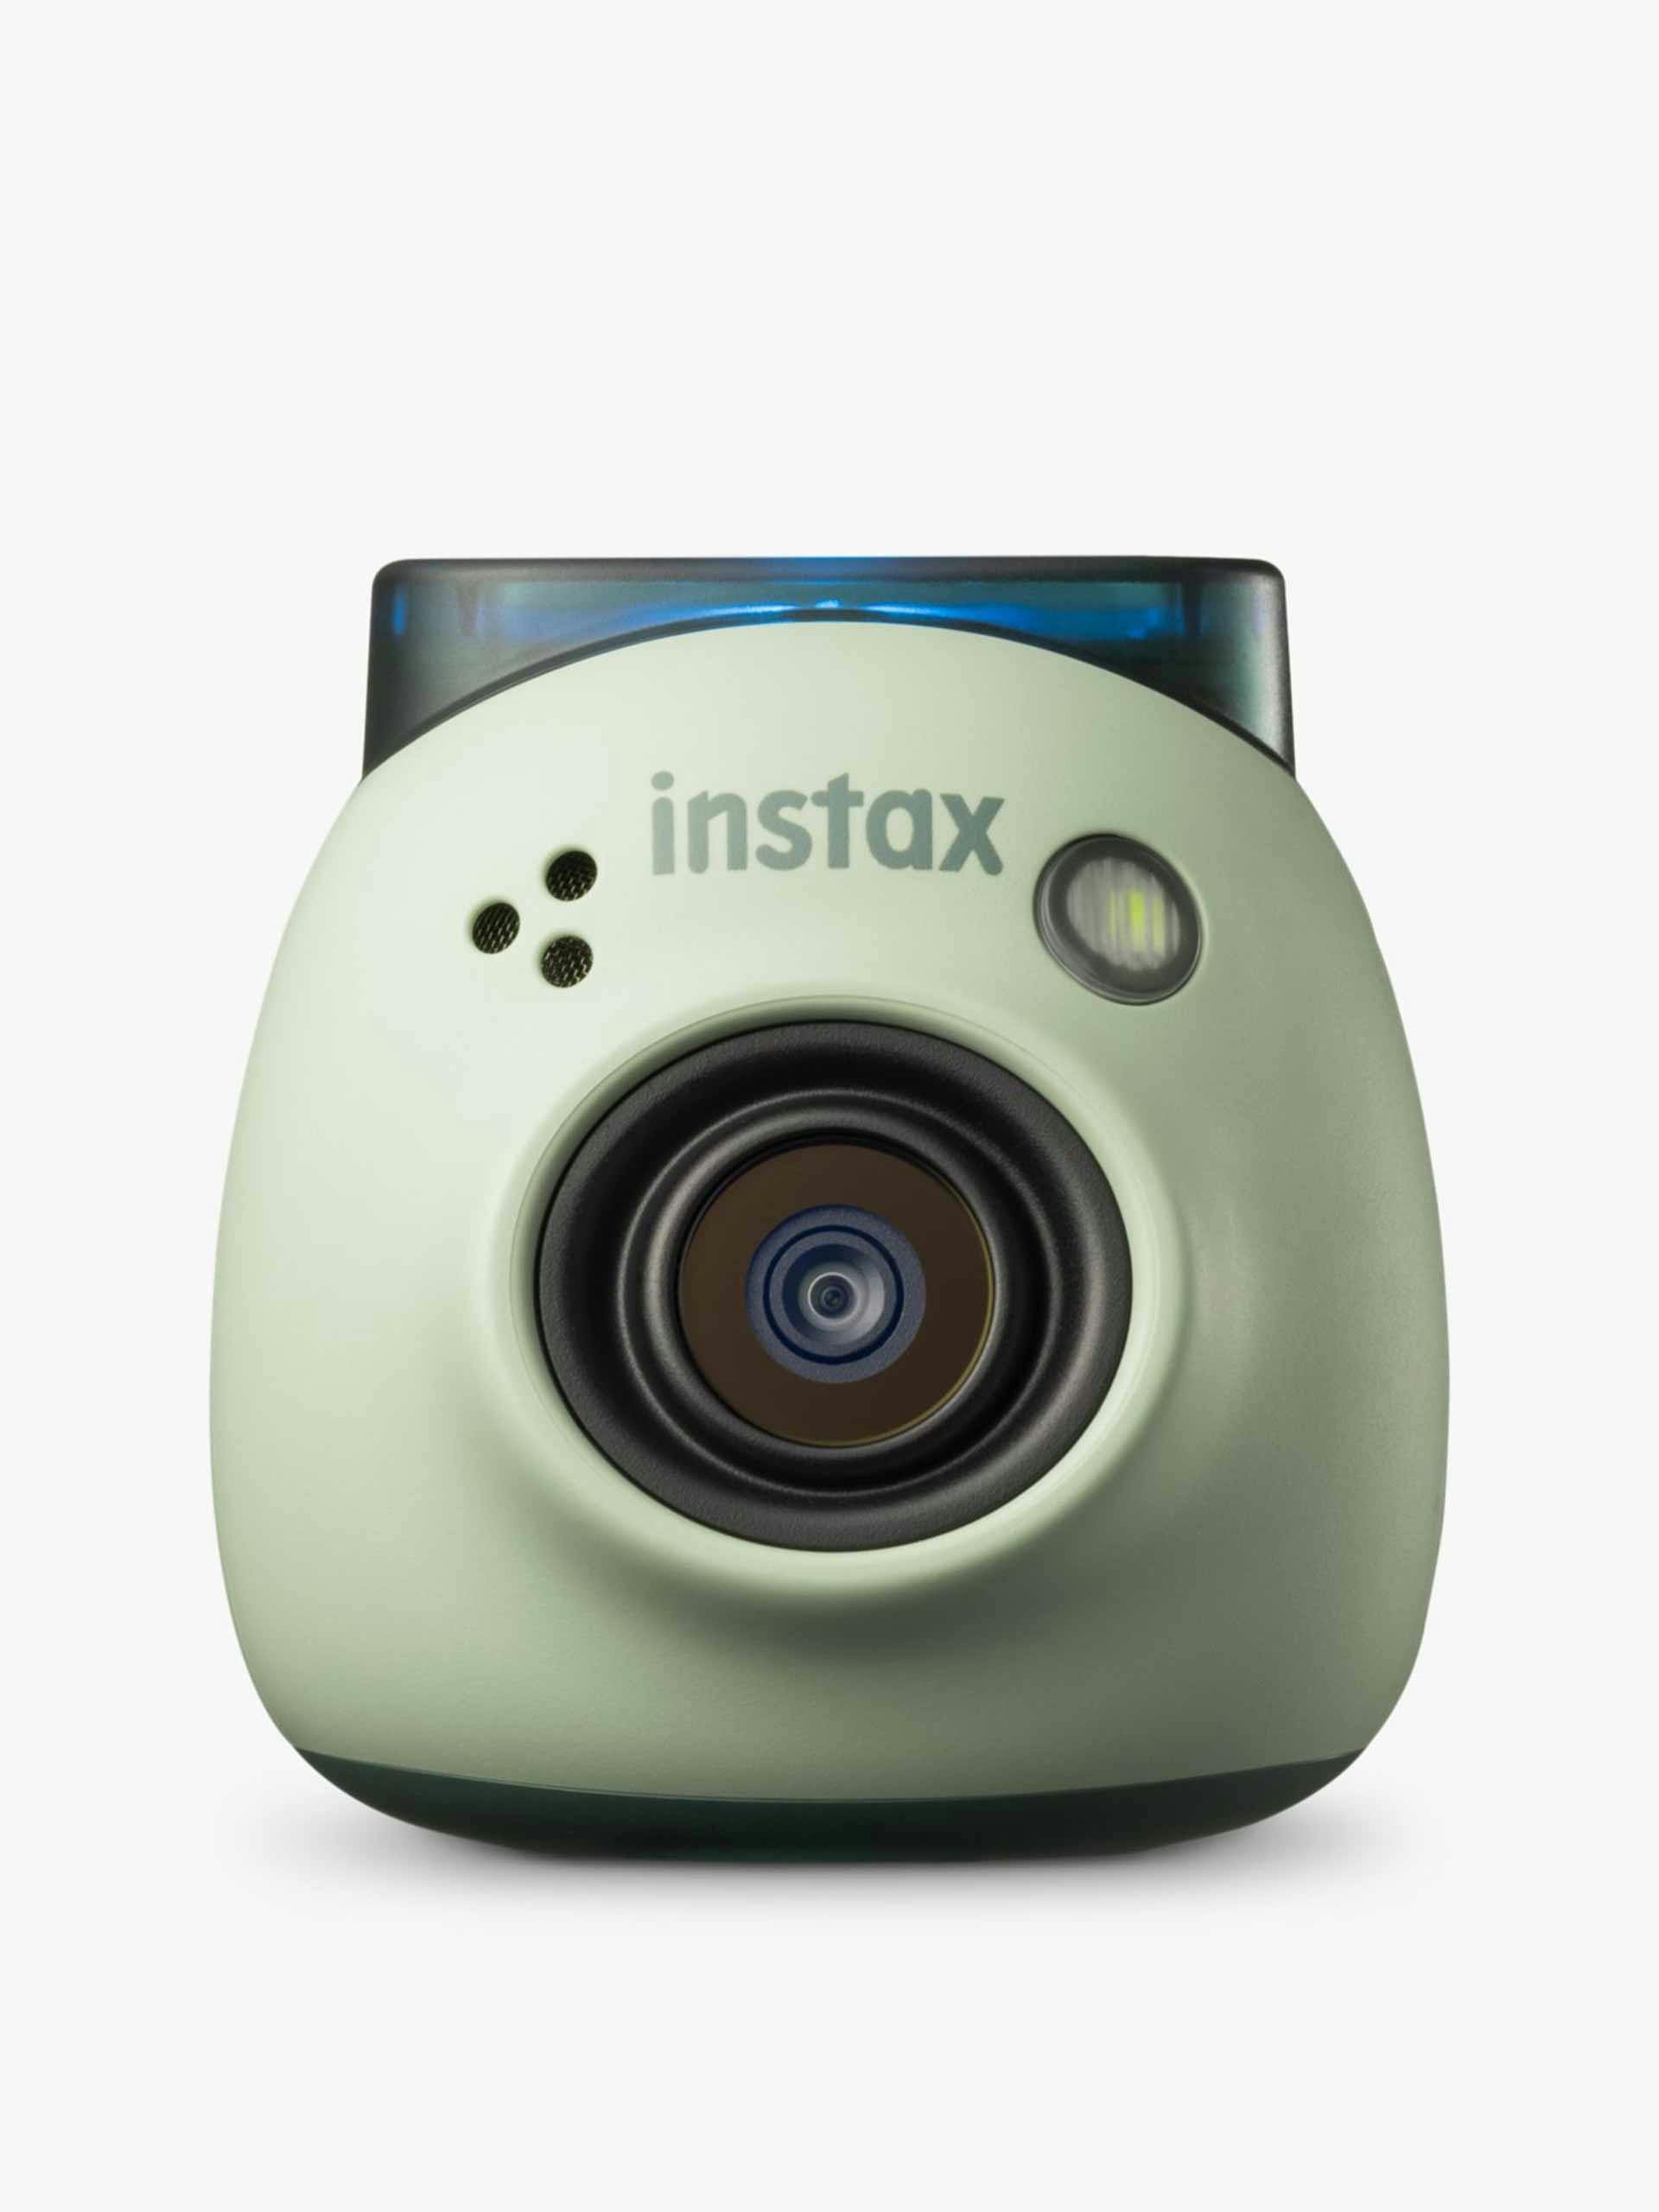 Instax Pal digital camera